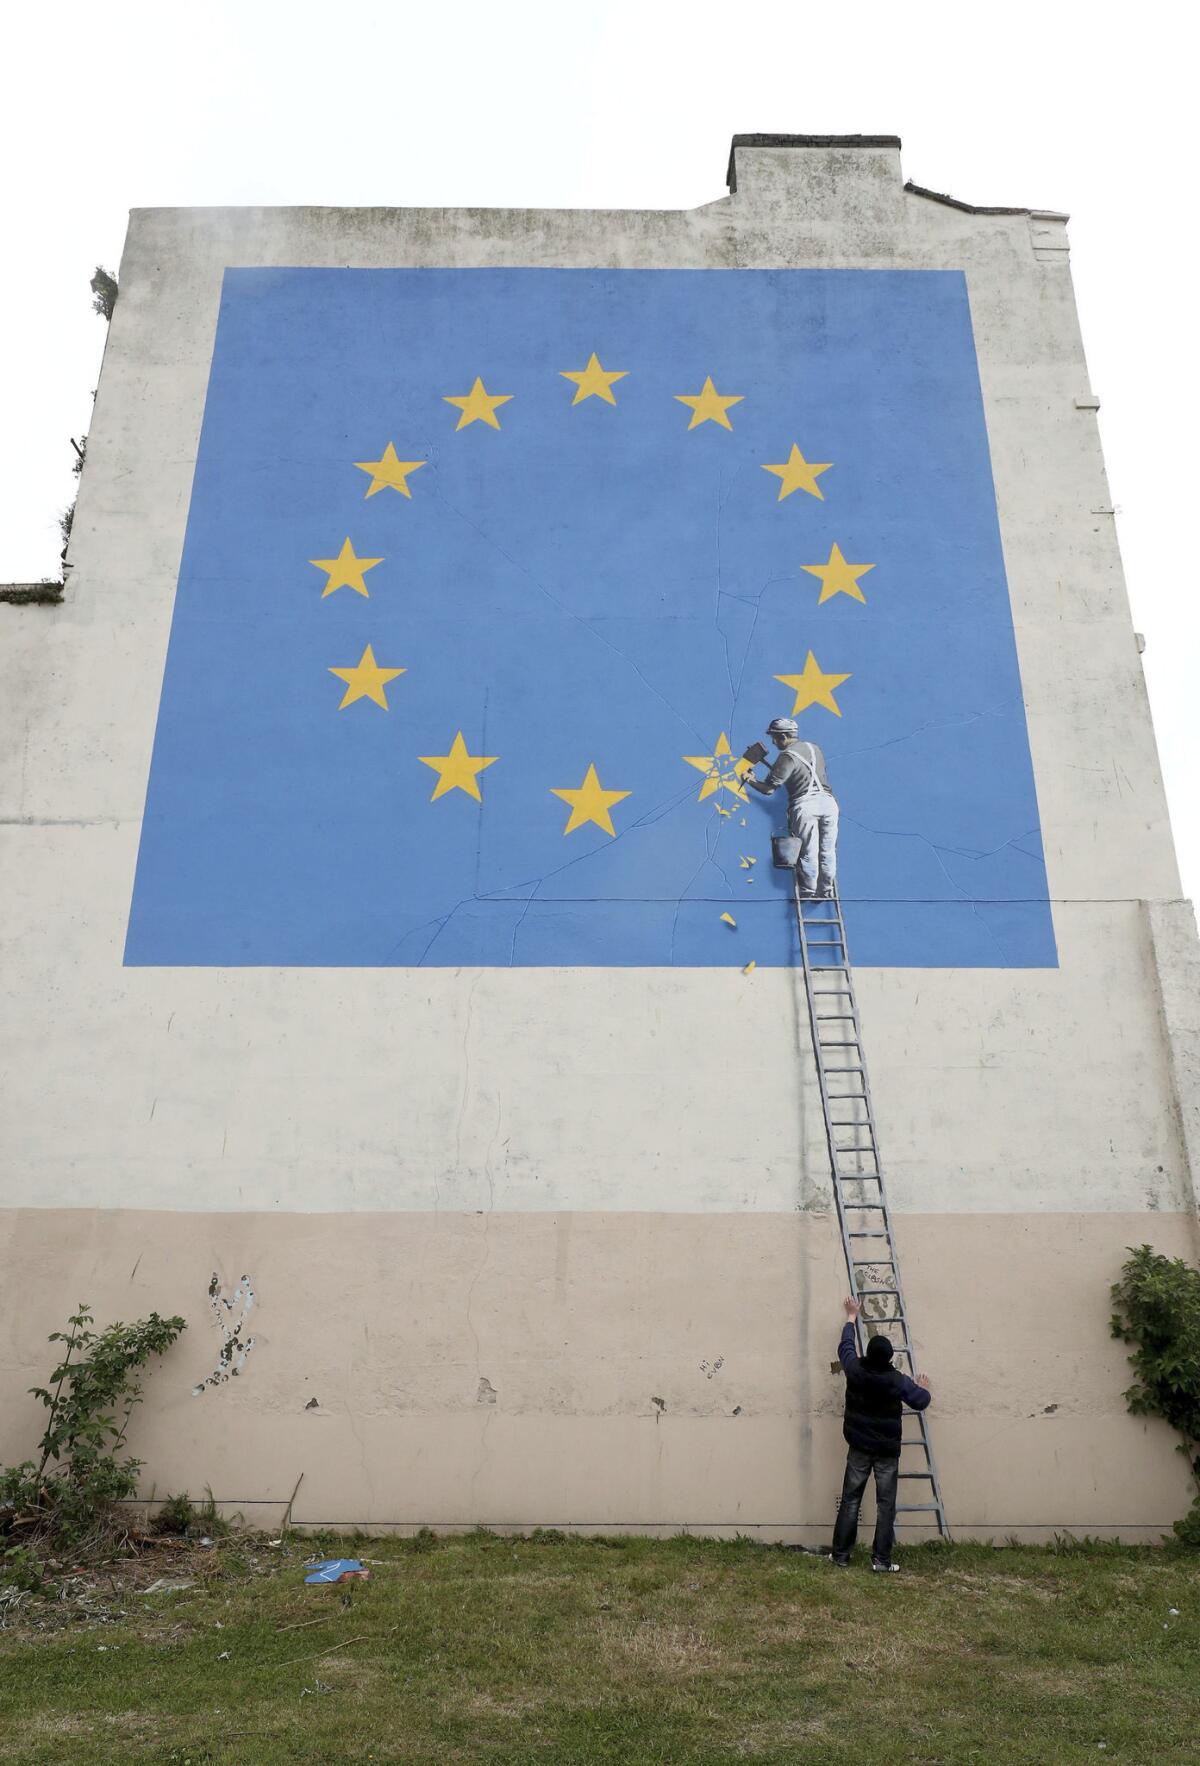 Un hombre, abajo, posa para una foto al pie de un mural del artista callejero Banksy en Dover, Inglaterra, el lunes 8 de mayo del 2017. El mural muestra a un trabajador borrando con un cincel una de las 12 estrellas de la bandera de la UE, alusivo a la decisión de Gran Bretaña de salirse de la Unión Europea. (Gareth Fuller/via AP)